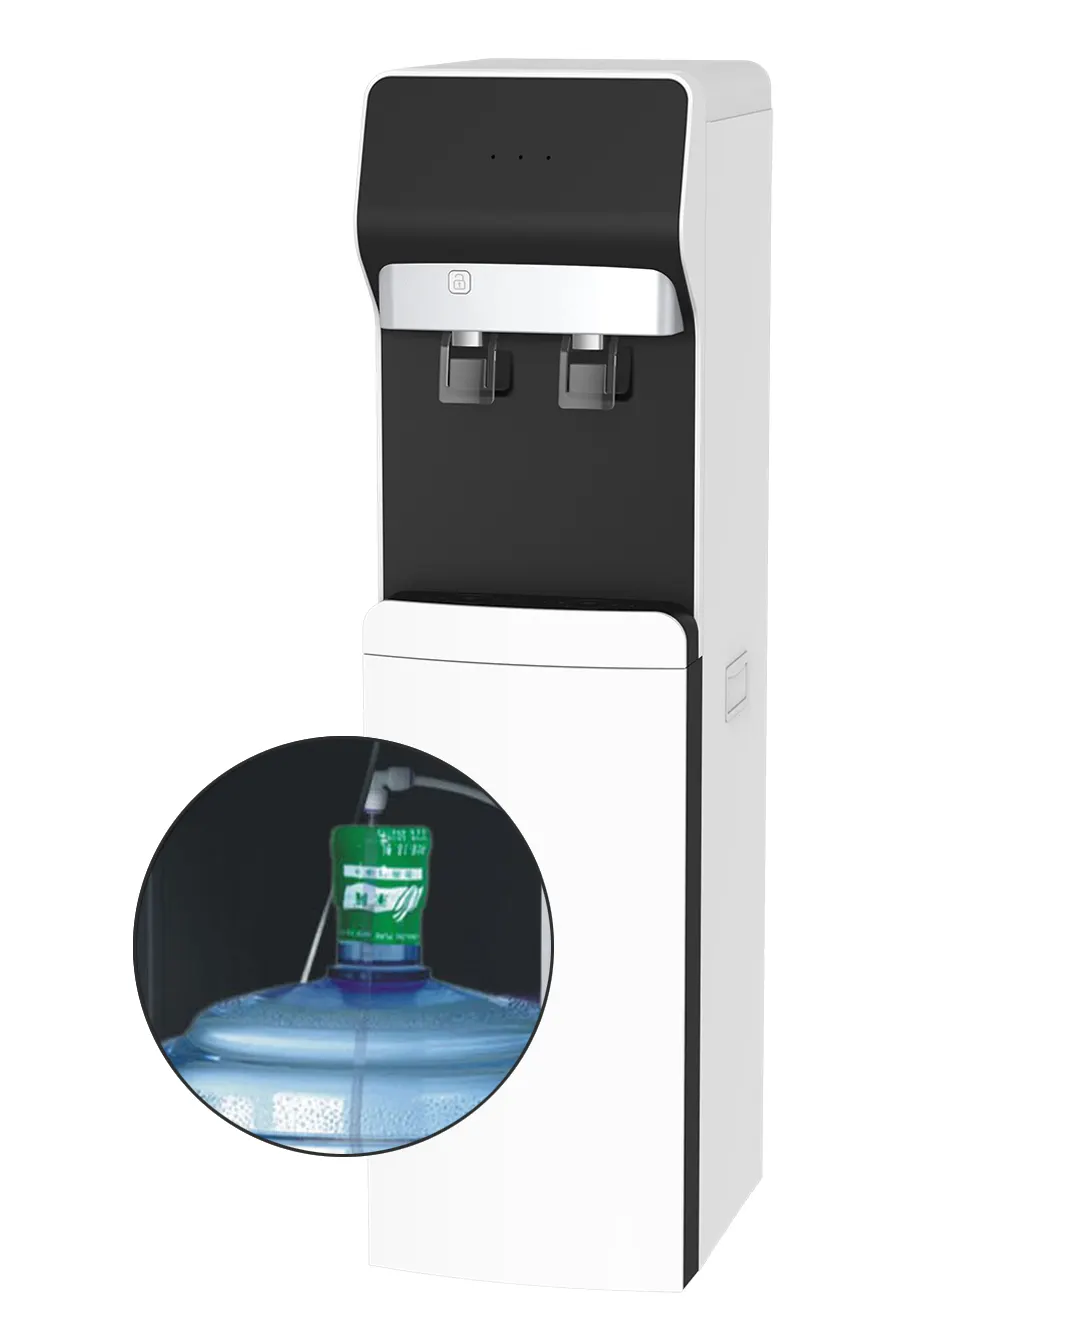 AQUART-dispensador de agua potable para uso en el hogar, máquina expendedora de agua fría y caliente, de pie, barata, sin refrigerador, BY530-3 chino